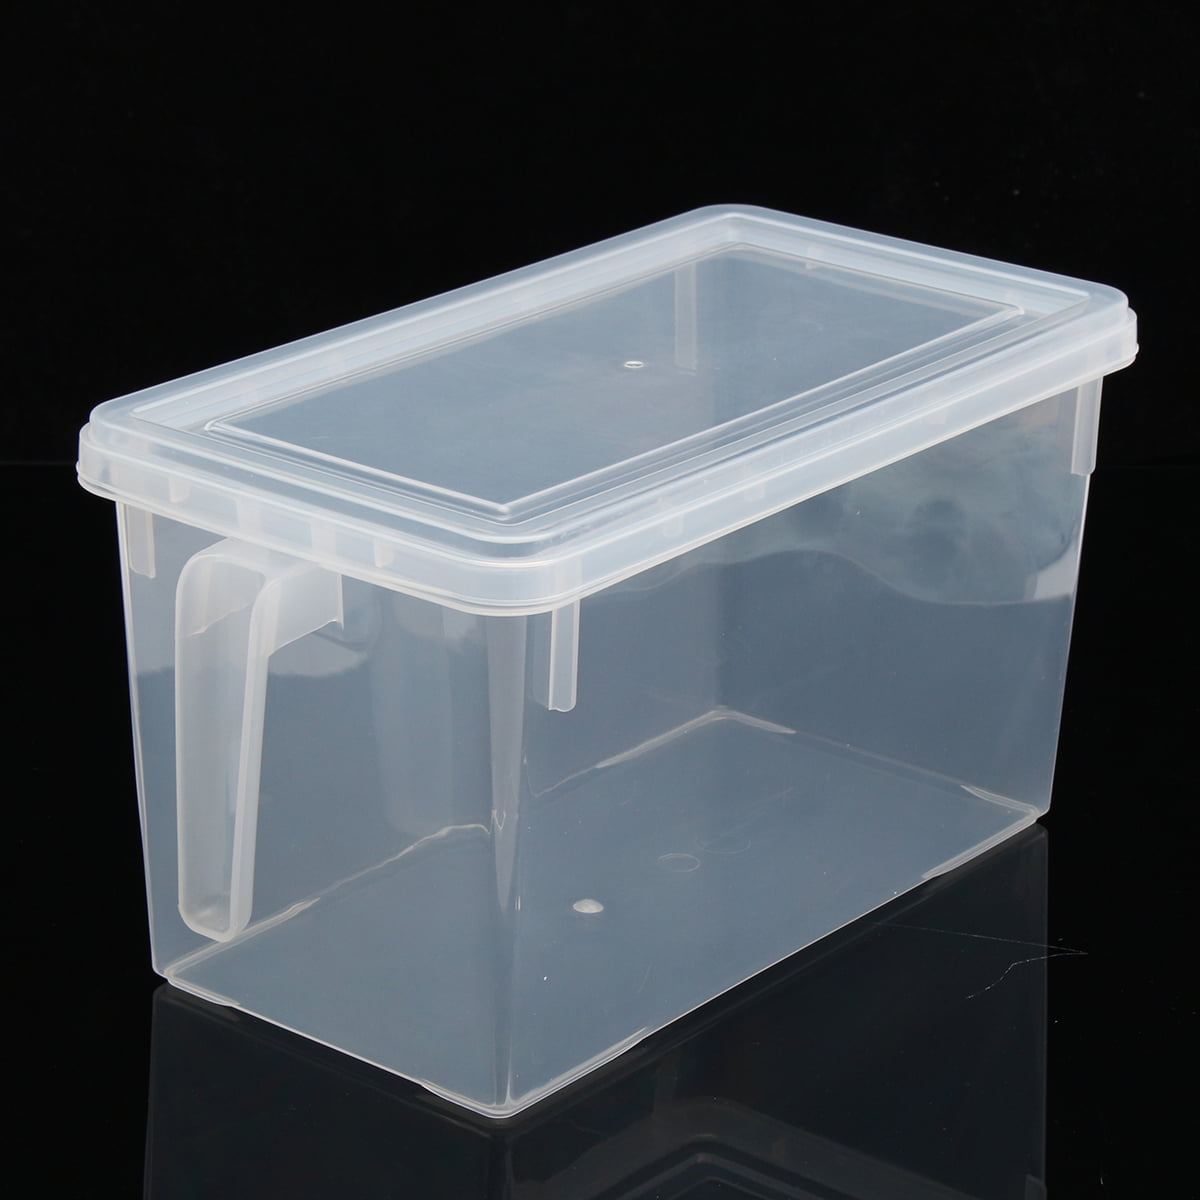 2PCS Kitchen Refrigerator Food Storage Box Case Container Organizer